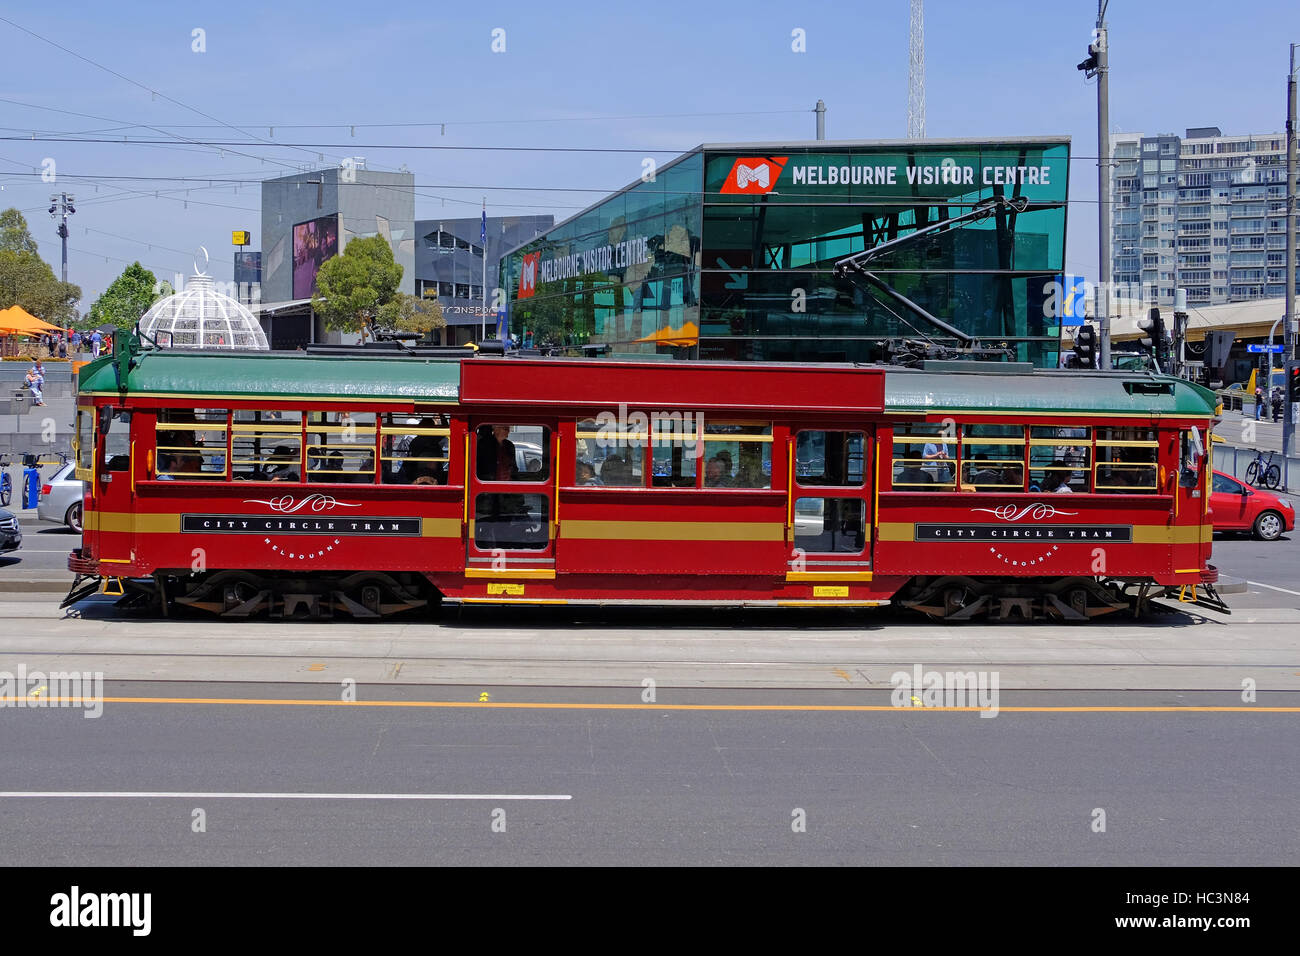 Melbourne's historic tram, which runs a circular route round the city centre passes the Visitor Centre. Melbourne, Victoria,Australia Stock Photo